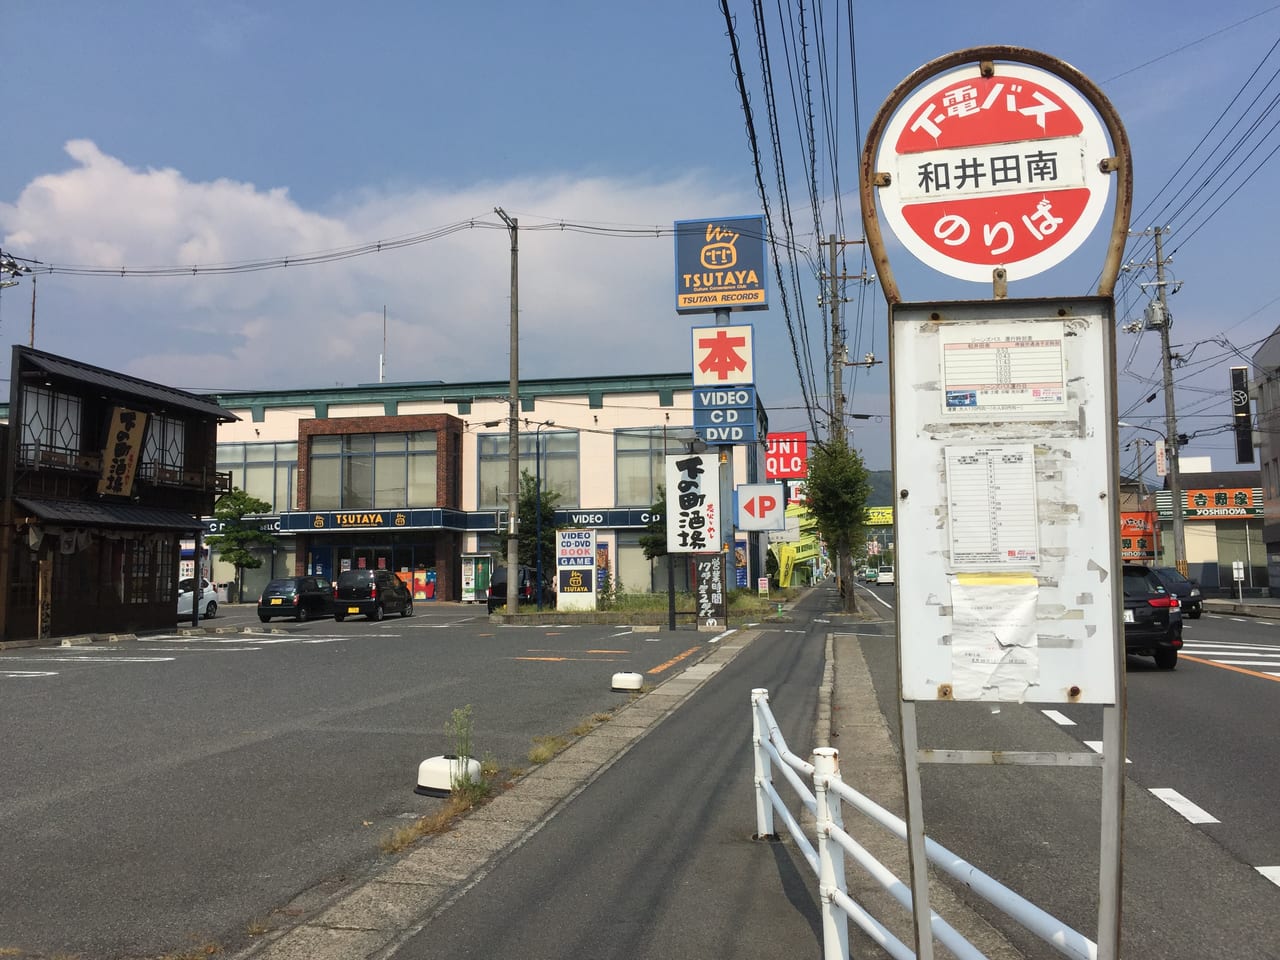 倉敷市 児島のtsutayaが9月末閉店 貸出はいつまでできる 号外net 倉敷市